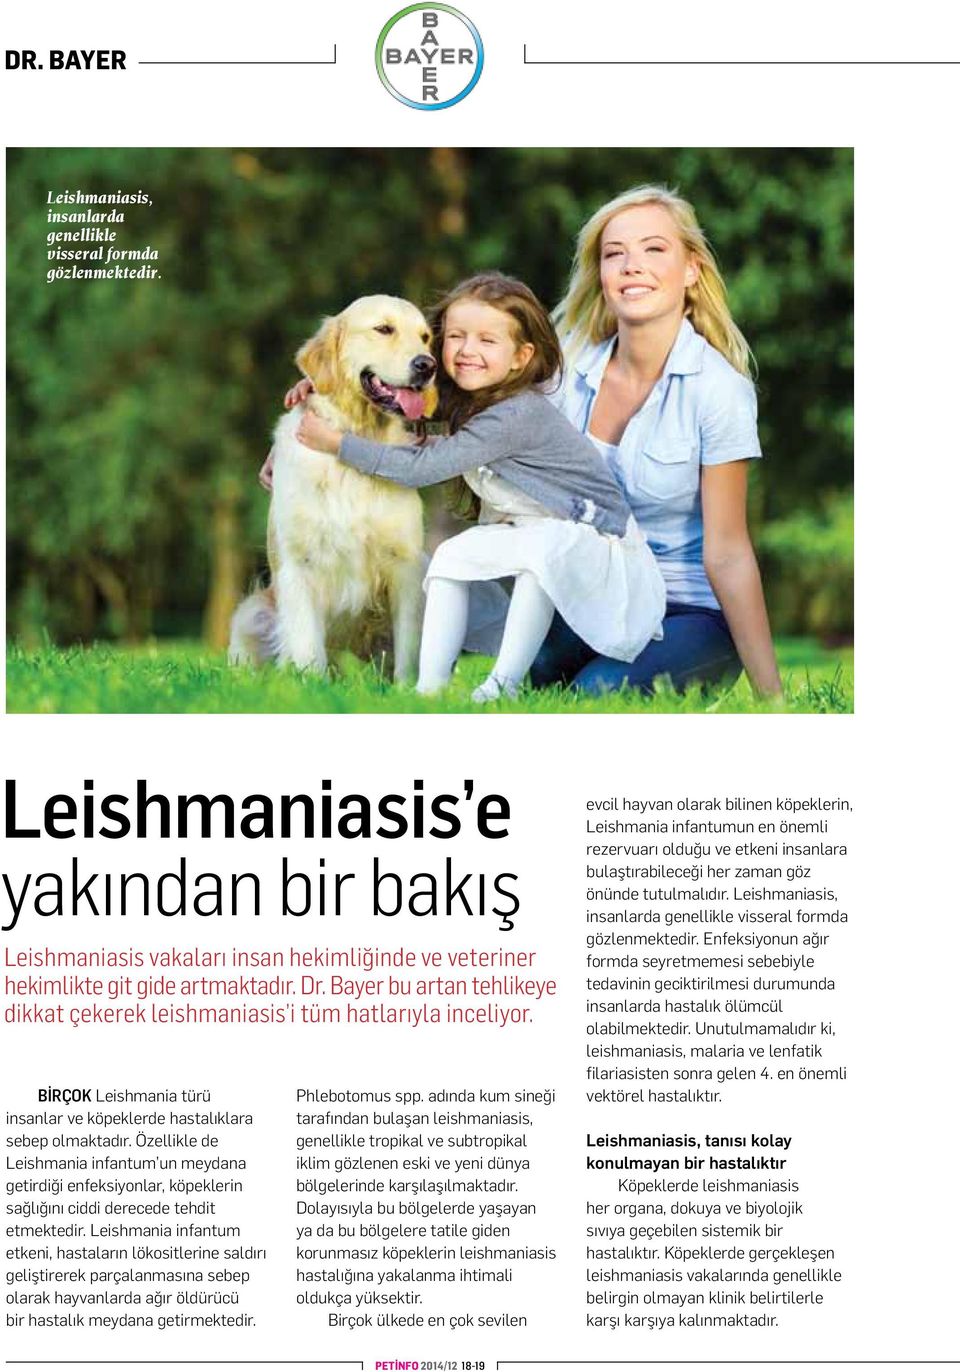 Özellikle de Leishmania infantum un meydana getirdiği enfeksiyonlar, köpeklerin sağlığını ciddi derecede tehdit etmektedir.